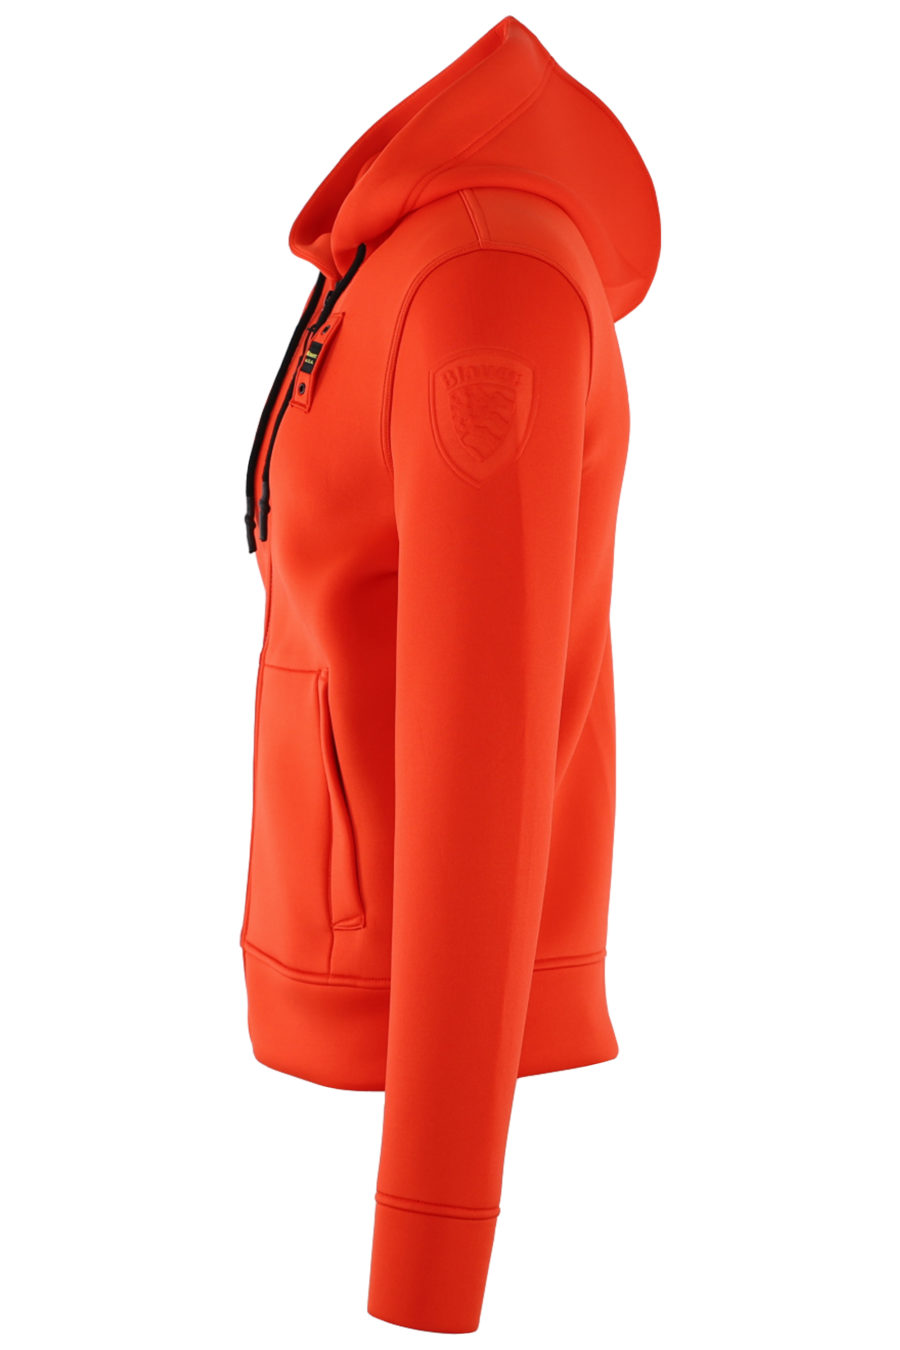 Camisola de neoprene laranja com capuz e fecho de correr - IMG 0510